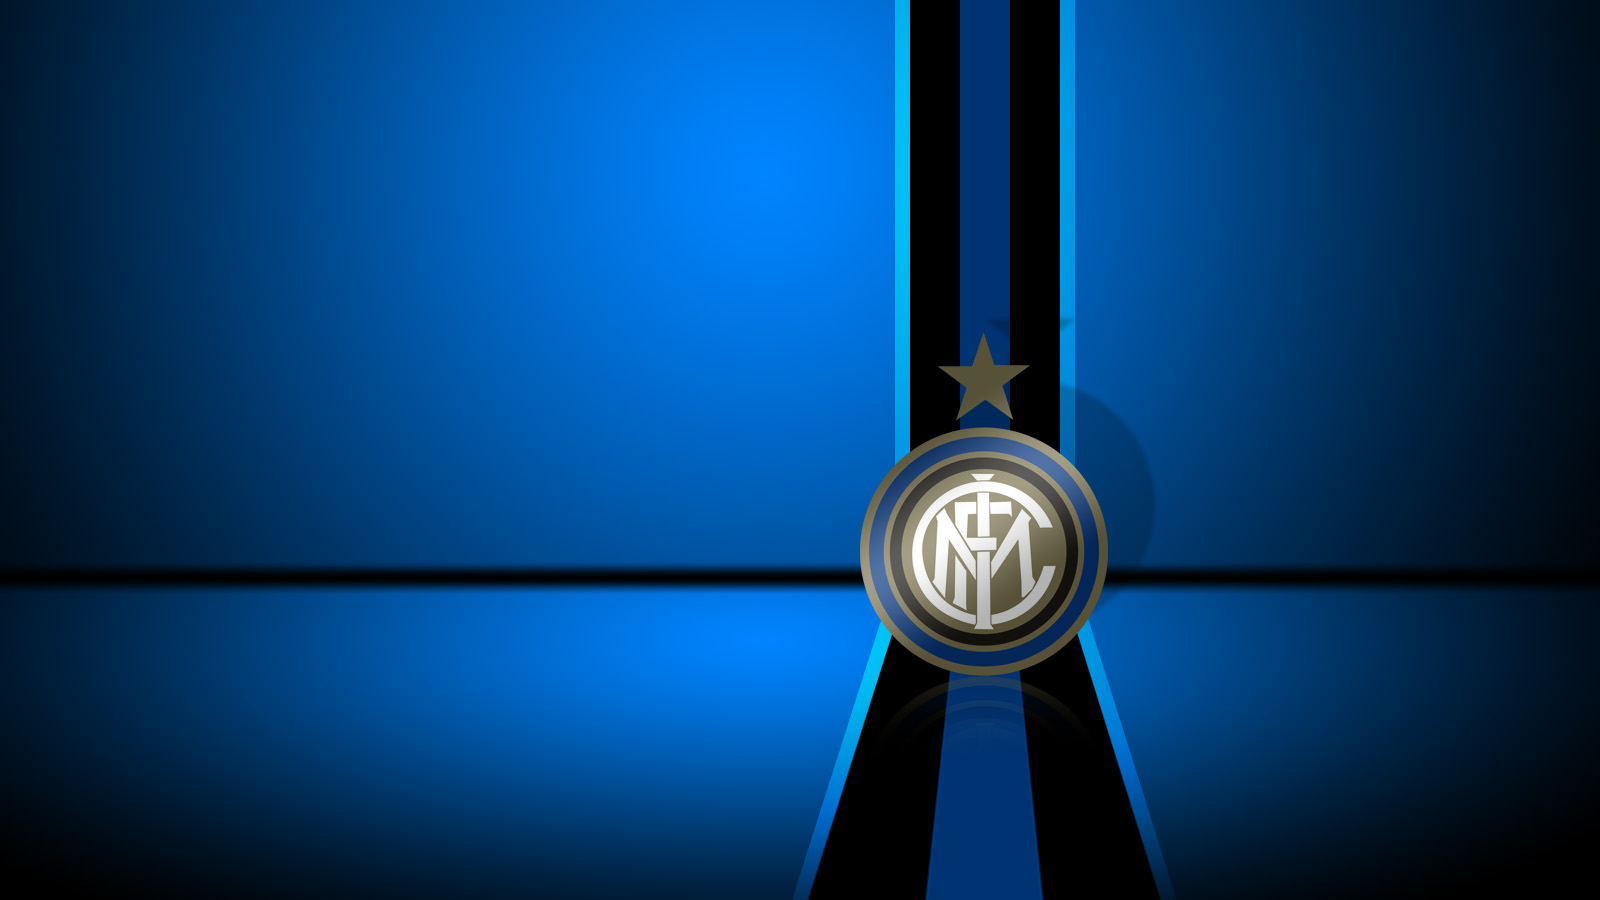 Inter Milan Wallpaper S Cool